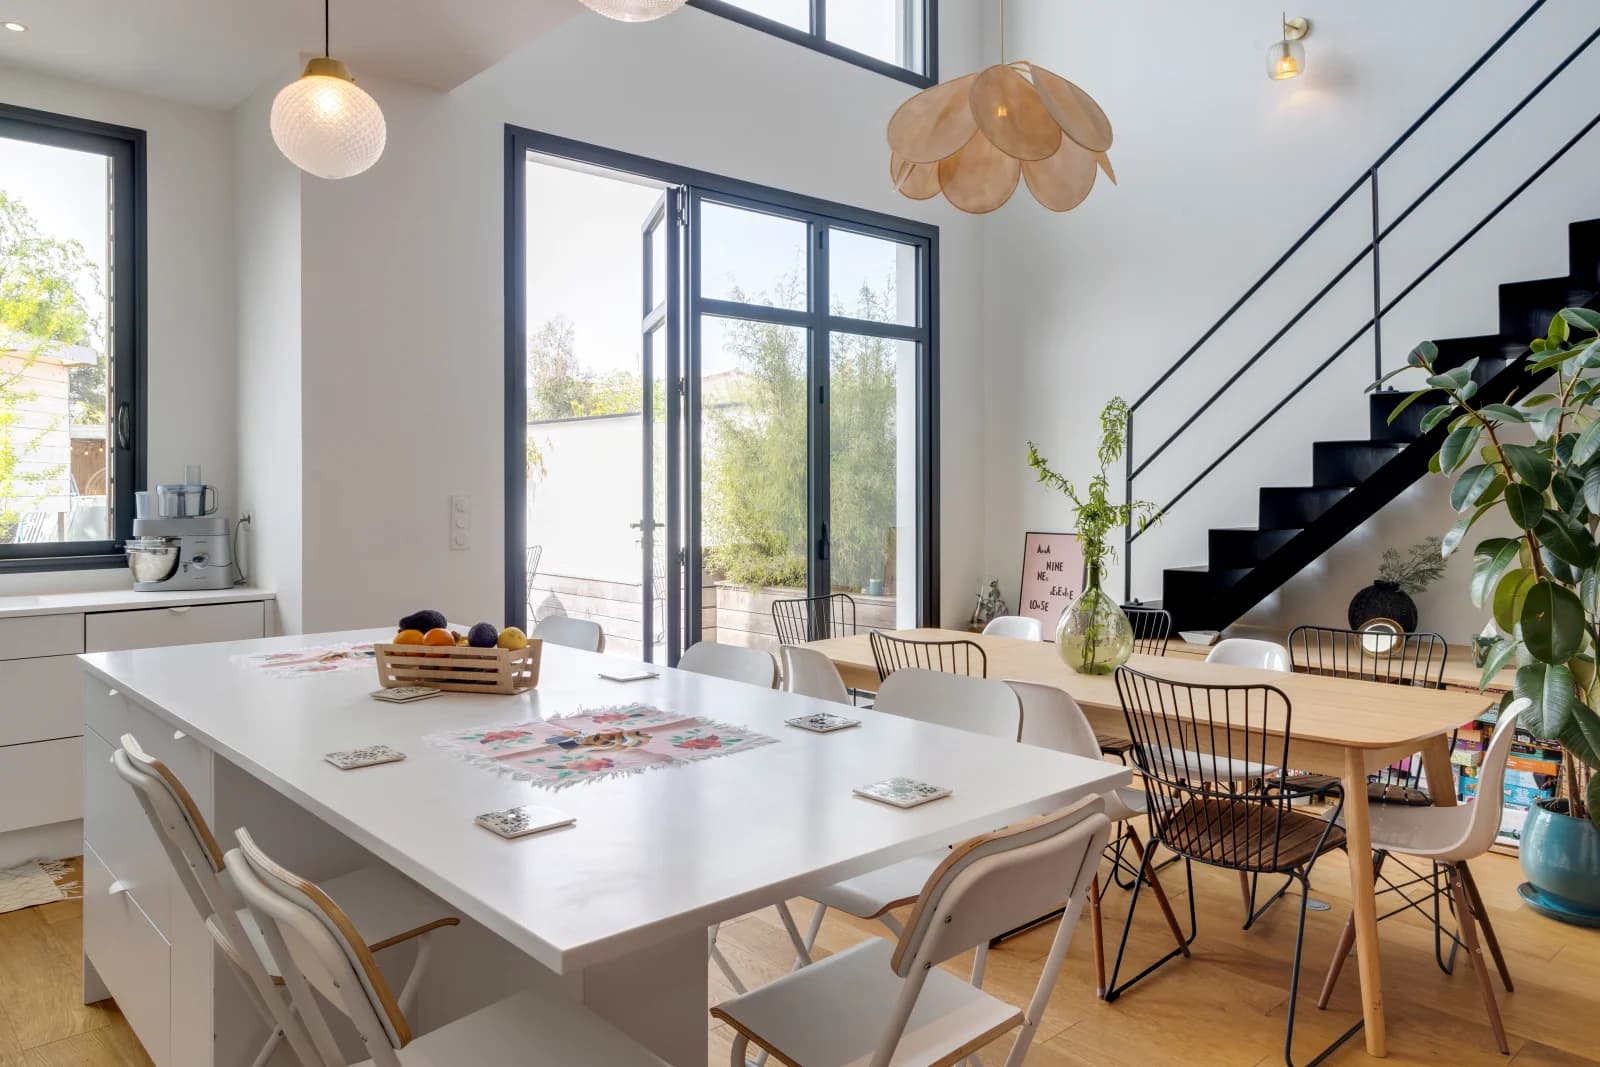 Comedor dentro Casa de cristal diseñada por un arquitecto con terraza y jardín - 2